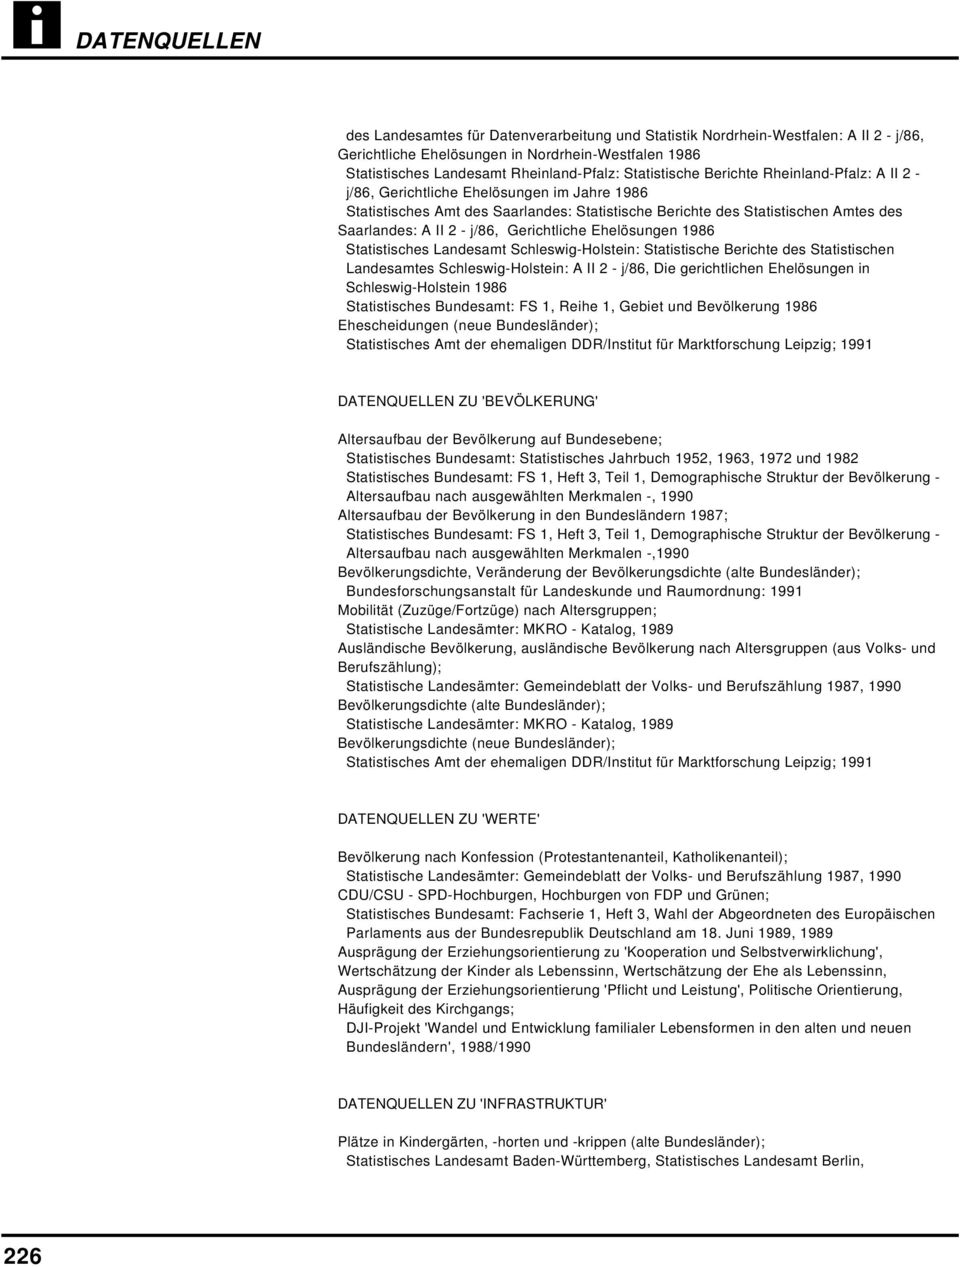 Berichte des Statistischen Landesamtes Schleswig-Holstein: A II 2 - j/86, Die gerichtlichen Ehelösungen in Schleswig-Holstein 1986 Statistisches Bundesamt: FS 1, Reihe 1, Gebiet und Bevölkerung 1986